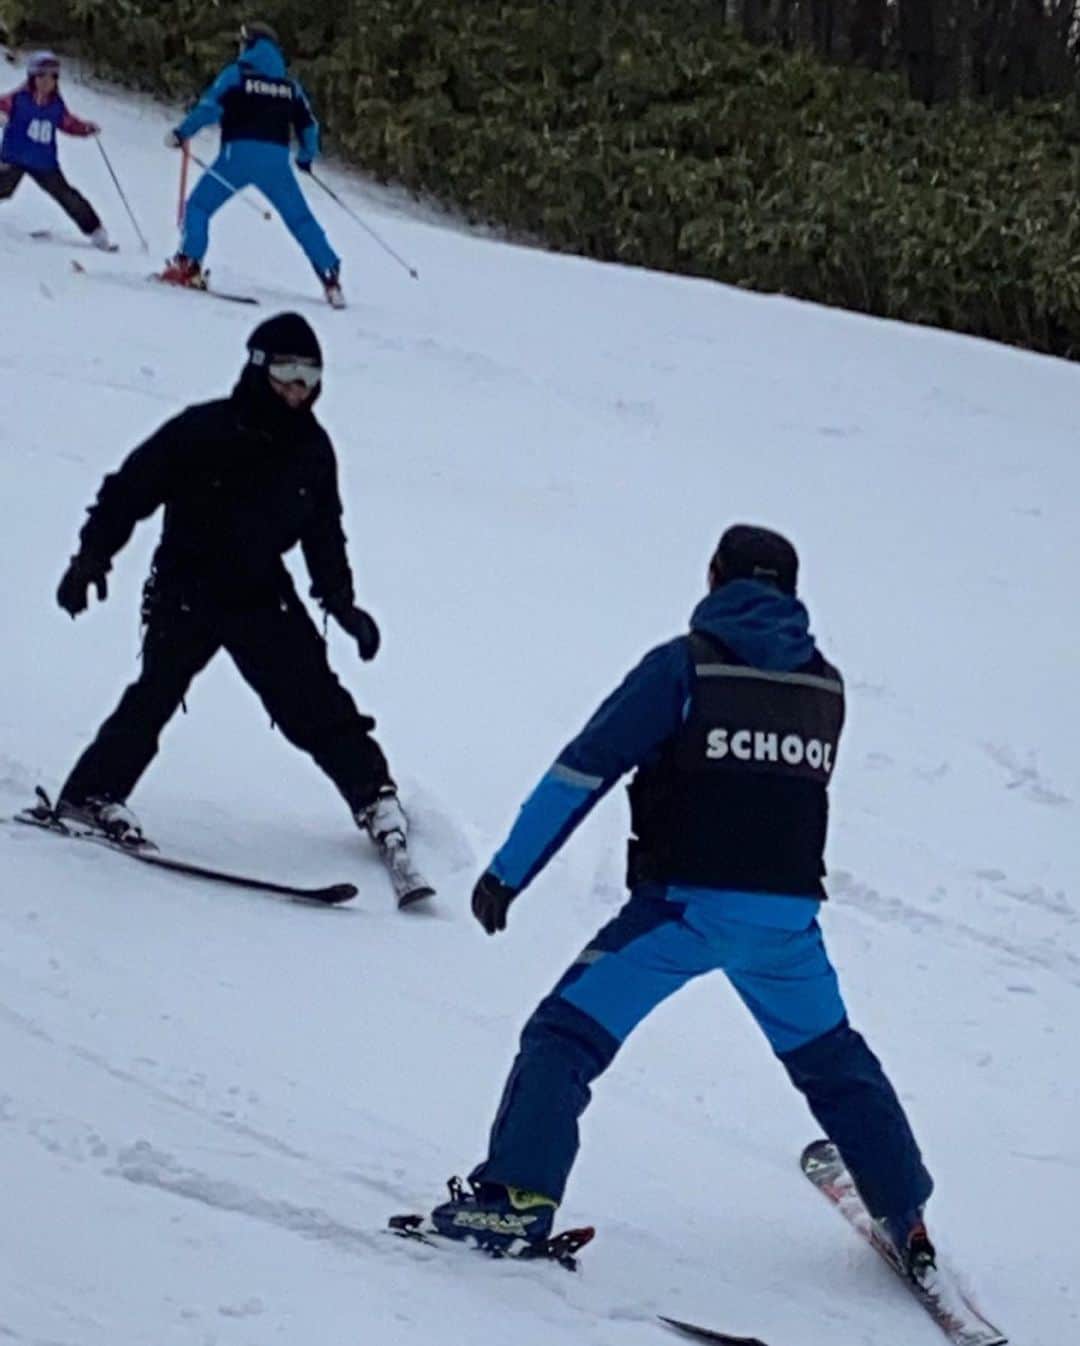 綾小路翔さんのインスタグラム写真 - (綾小路翔Instagram)「お正月はTAKUROさんと函館へ。﻿ 何と人生初のスキーに挑戦。﻿ 厳密に言うと二度目なんだけど、前回は高校の卒業旅行で斑尾に行った時なので、今から2億5千年前ぐらい。﻿ しかも何の学習も練習もせずにトライ、案の定僅か20分で膝の靭帯を伸ばし、瞬く間にゲレンデから退場となったので、実質まともに滑ったのは今回が初めて。﻿ 今回はきっちりスクールで超絶初級者コースからスタートし、2日間みっちり。いやー、楽しかった。﻿ ﻿ 次回の大人の修学旅行はスキー合宿もいいな。﻿ 絶対に俺が一番下手だから、未経験者や苦手な人は俺と学べば良いし、上手い人はトミーちゃんや光くんとびゅんびゅん滑れば良いしね。﻿ でもこういう運動系は内外から反対意見、山盛り来そうな気もする。﻿ ﻿ しかし何しろ、楽しかった。﻿ 今、下半身がつくば万博ぐらいの頃のロボみたいな動きだけど…。﻿ ﻿ 調子こいてゴンドラで山頂まで行き、最初は気持ち良く滑っていたものの、途中ターンに失敗した辺りからワケががわからなくなり、ほぼ時速119㎞でかなりの距離を直滑降した後、雪だるまになるぐらいゴロゴロと転がり続け、そのまま20分ぐらい起き上がれなかったり、ようやく立ち上がったものの30分ぐらいスキー板を履けなかったり、そのくせに黙ってリベンジに向かい、40分ぐらい行方不明になったり、その上片道50分の運転を2日間往復してもらっても、嫌な顔一つせずにとことん付き合ってくれた我らがゴッド兄ちゃん・TAKUROさんに心からの感謝と尊敬を。﻿ ﻿ そして函館の素晴らしき仲間達にも逢えたし、最高のお正月でした。﻿ ﻿ もちろん、食も。﻿ 元日は手巻き寿司＆もつ鍋。幸せに包まれた。﻿ 2日はSODAPOP・HIKARUくんのお宅でご馳走になった。あの煮物が宇宙一美味しくて、出来れば一生食べていたかった。﻿ 3日はイタリアンに行った。サラダもリゾットもパスタもピザもスープも最高だった。スフォリアテッラなる未知のデザート、食べてみたかった。﻿ 4日は大勢で根ぼっけに。北の幸、食べまくった。みんなでかるた（琢郎の野望4）をした。楽しかったけど、負けて悔しかった。本気だった分、本当に悔しかった。﻿ ﻿ そんなこんなでパーフェクトにリフレッシュ出来たので、2020年も頑張る。張り切る。﻿ ﻿ とにかくこの数日間、ゲレンデでも街中でもひたすら転んだ。﻿ 結構痛かったしみっともなかったし恥ずかしかった。﻿ でも立ち上がった。﻿ 結構痛かったしみっともなかったし恥ずかしかったのに。﻿ ﻿ 生きていると痛い目に遭う事もしばしば。﻿ そもそも生きている事自体がみっともない。﻿ 何せ生きてるだけで恥ずかしい。﻿ ﻿ 今年も色々あるだろう。﻿ つまずくこともあるだろう。﻿ スッテンgコロリンgと転ぶこともあるだろう。﻿ 転んだ際に鈍い音がすることもあるかもしれない。﻿ それでも俺は立ち上がるのだろう。﻿ 単にそれ以外の選択が思い浮かばないから…。 そのまま朽ち果てたい気持ちになることもあるけど、それでもきっと俺は立ち上がる。﻿ わけもなく。いや、あるのかもしれないけど。﻿ 深くは考えない。考えても意味がない。﻿ 考えるなら他のこと。﻿ 楽しくなるようなこと。﻿ 明日が待ち遠しくなるようなこと。﻿ そんだけ。﻿ そんだけ〜。﻿ ₍₍☝️( ˊᵕˋ)☝︎⁾⁾ ｿﾝﾀﾞｹ~⤴︎﻿ ﻿ ﻿ シーズン中、またお休み取れたら雪山行くんだ。﻿ すんごいスキー上手いのに、超絶ヘタクソに付き合える奇特な方いましたら、是非ご一緒に。﻿ もちろんヘタッピだけど興味あるって方も是非。﻿ あ、確か直太朗、プロ級に上手いんだった。﻿ 連絡してみよかな。﻿ ﻿ ﻿ #お正月﻿ #2020﻿ #令和二年﻿ #函館﻿ #TAKURO #GLAY﻿ #函館のジョンレノン﻿ #綾小路翔 #氣志團﻿ #木更津のジョン万次郎﻿ #ゲレンデが溶けるほどの汗っかき﻿ #ボーゲン一徹﻿ #鬼の八の字﻿ #鬼八﻿ #ワシがオフィス男闘呼塾エンターテインメント筆頭綾小路鬼八であーる!!（ではない）﻿ #何も持たず突発的に雪山を目指そうとした自分に﻿ #素敵なウェアを貸してくれたのは﻿ #優しくて優しい﻿ #早乙女光 #きゅん﻿ #ありがとう﻿ #心ばかりですがお礼に﻿ #ほっけ ﻿ #送りました #お納め下さい ﻿ #それと実を言うと何か使途不明なパーツを失くしたので﻿ #お詫びにジンギスカンも添えました﻿ #光さん…﻿ #どうかブツをお納め頂いた上でお怒りの方も何卒お収め下さい﻿ #ぜんぶ雪のせいだ Photo by TAKURO」1月5日 16時39分 - showayanocozey